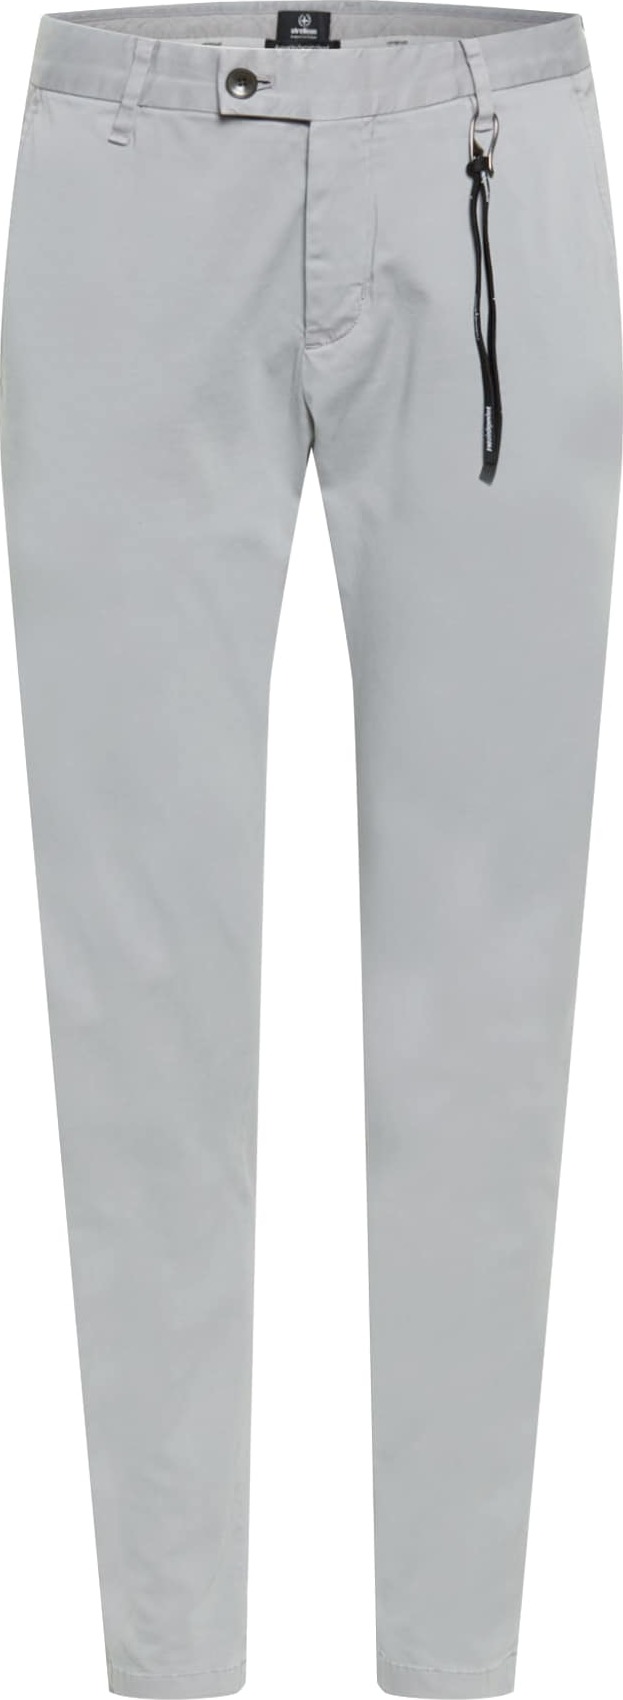 STRELLSON Chino kalhoty 'Code 2' stříbrně šedá